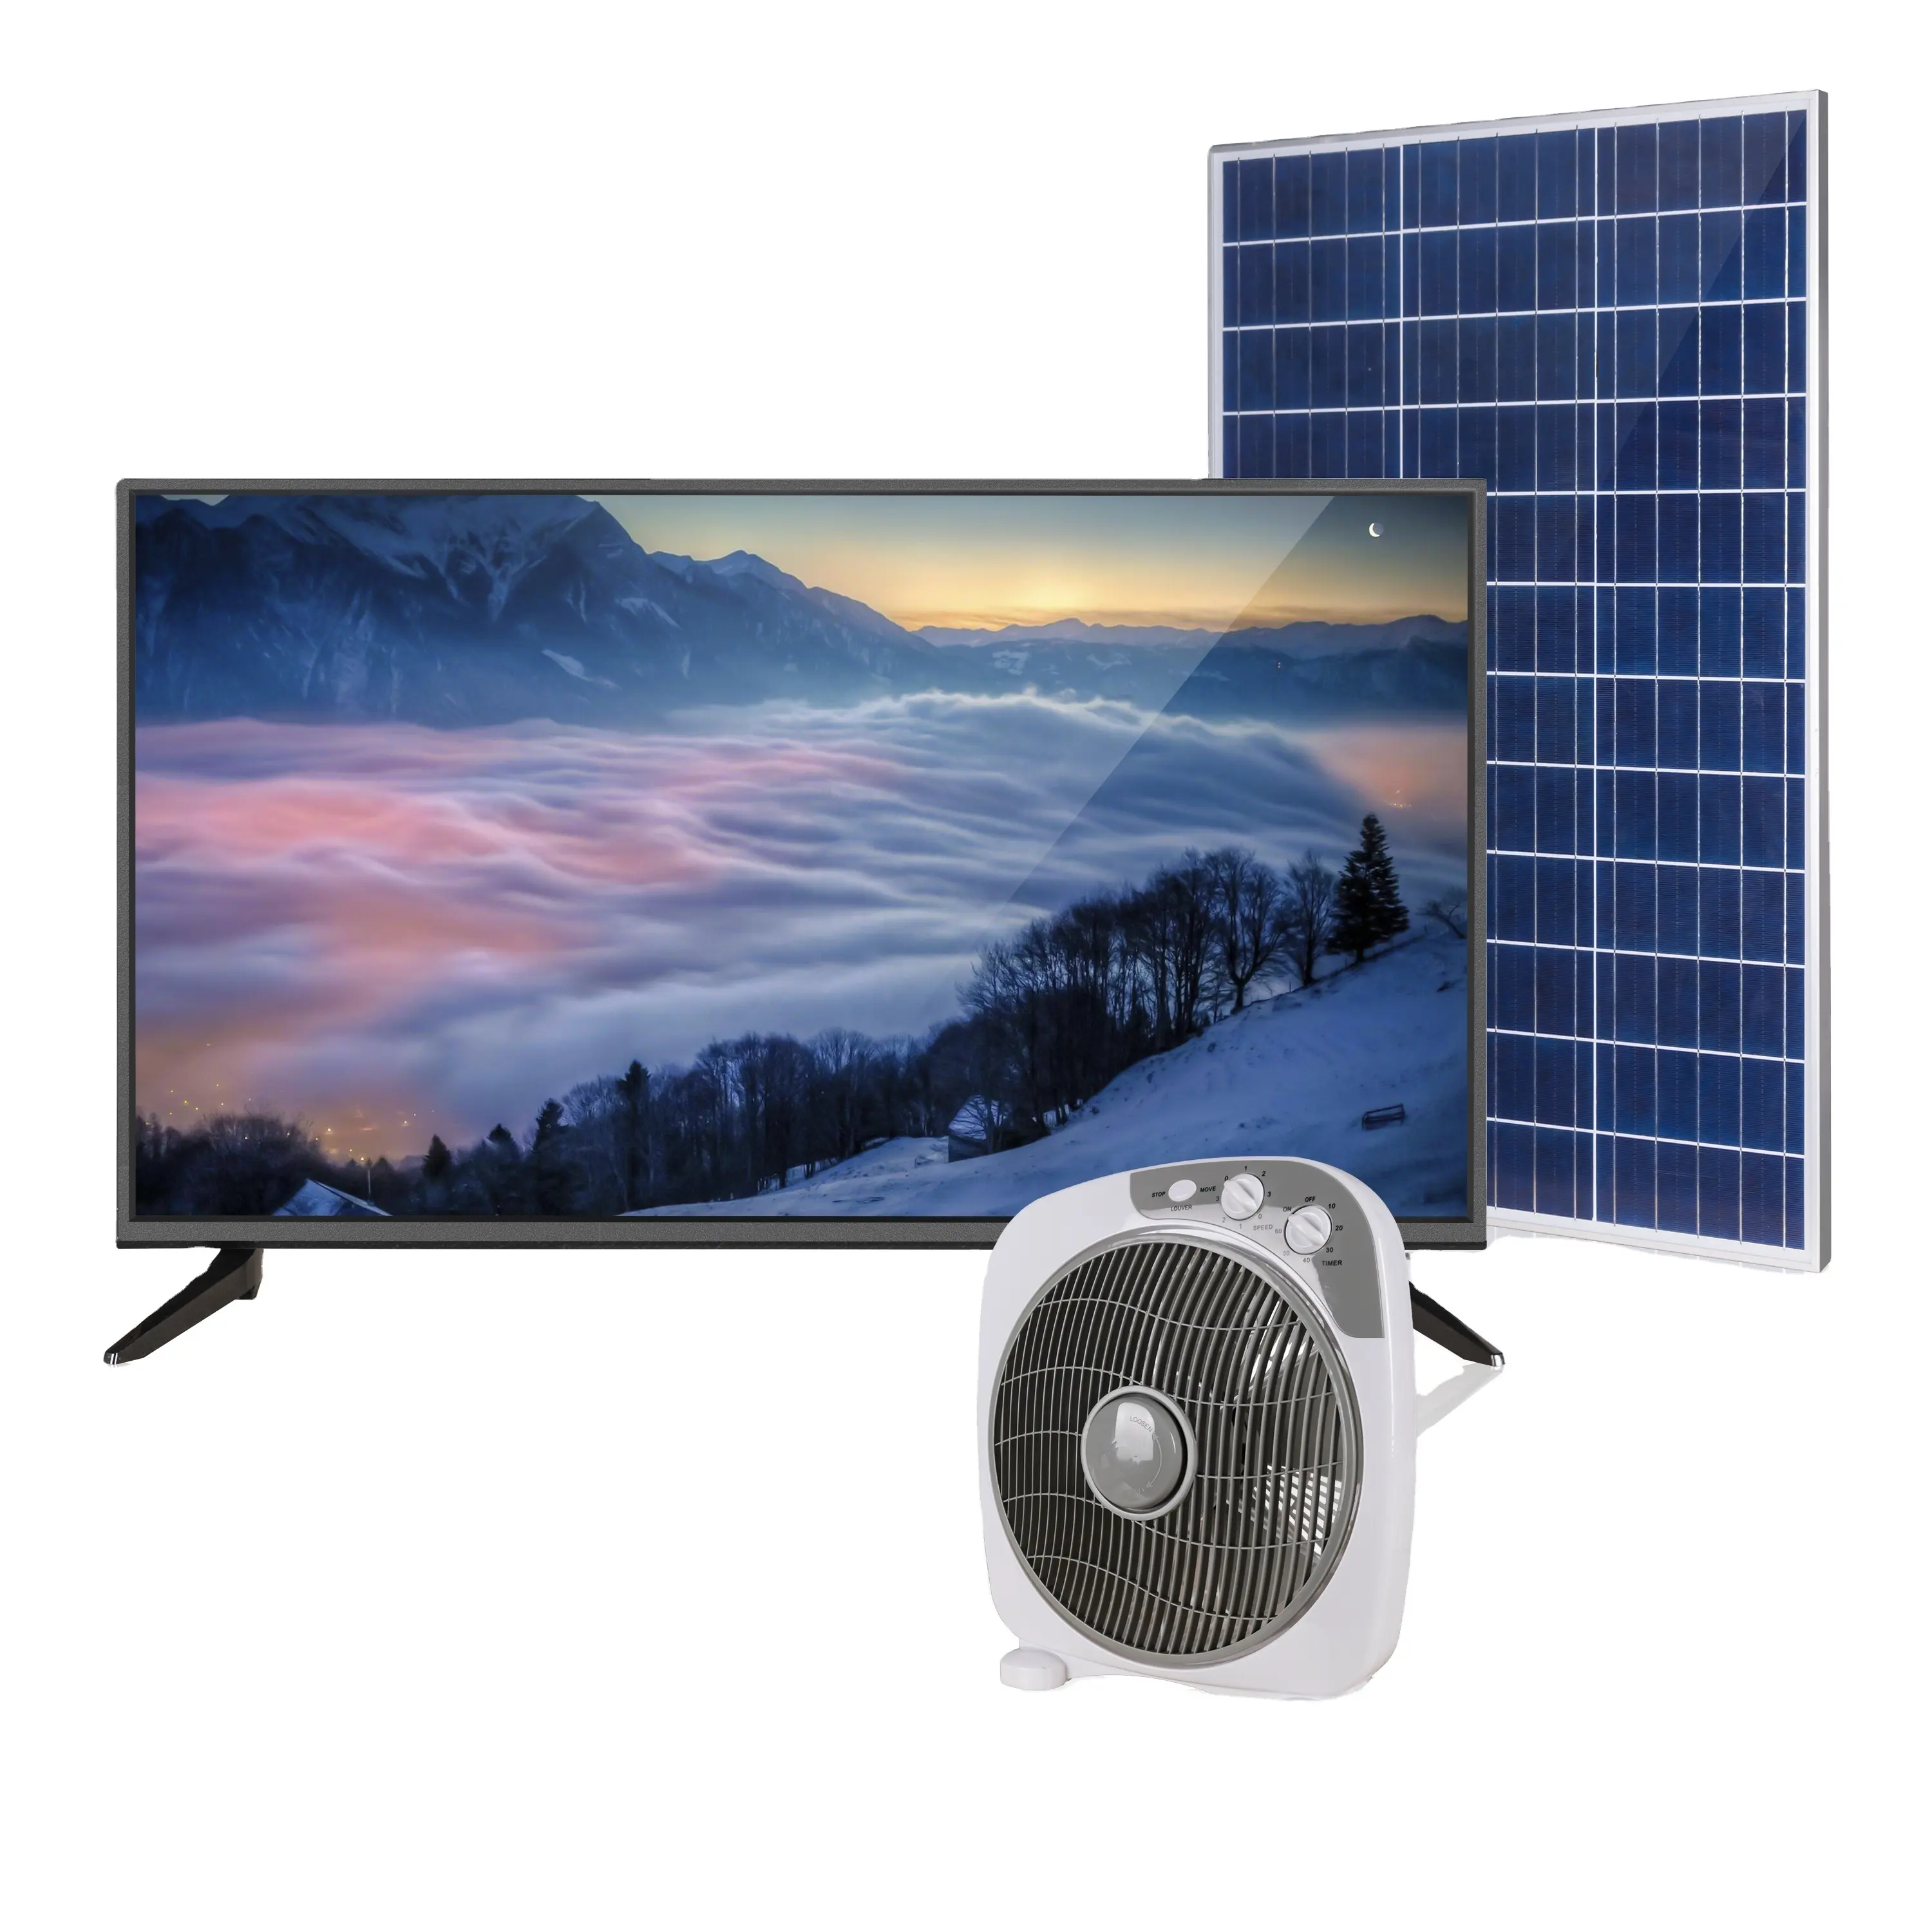 LCD TV 공장 도매 저렴한 가격 15 " - 40" 평면 스크린 전체 HD DC 12v 텔레비전 사용 리퍼 비시 Led TV